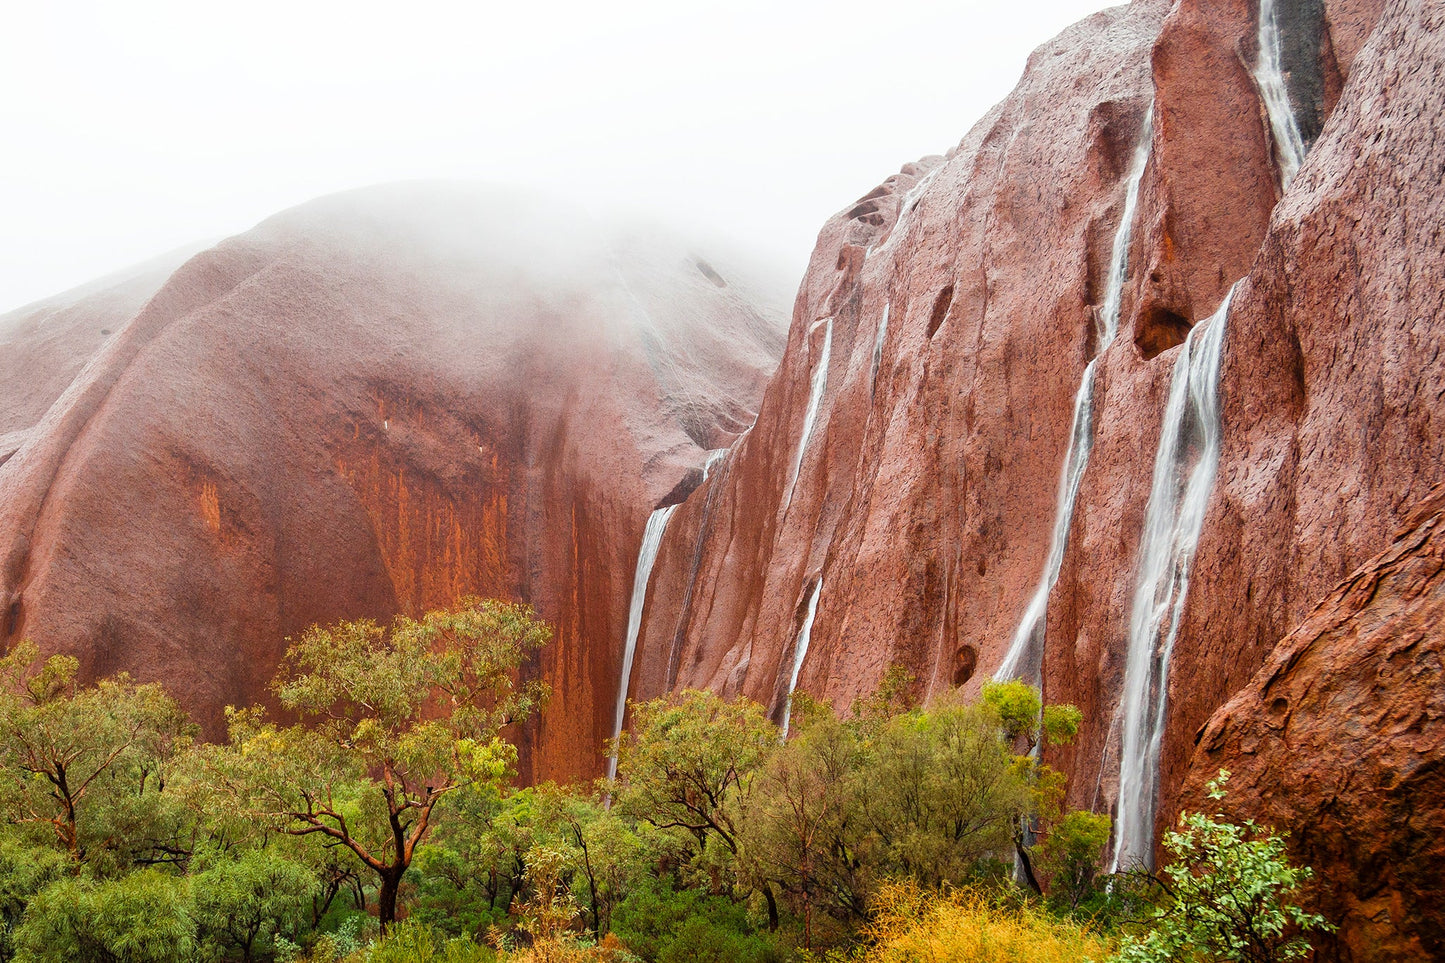 Falls in the mist - Uluru (Ayers Rock) Northern Territory